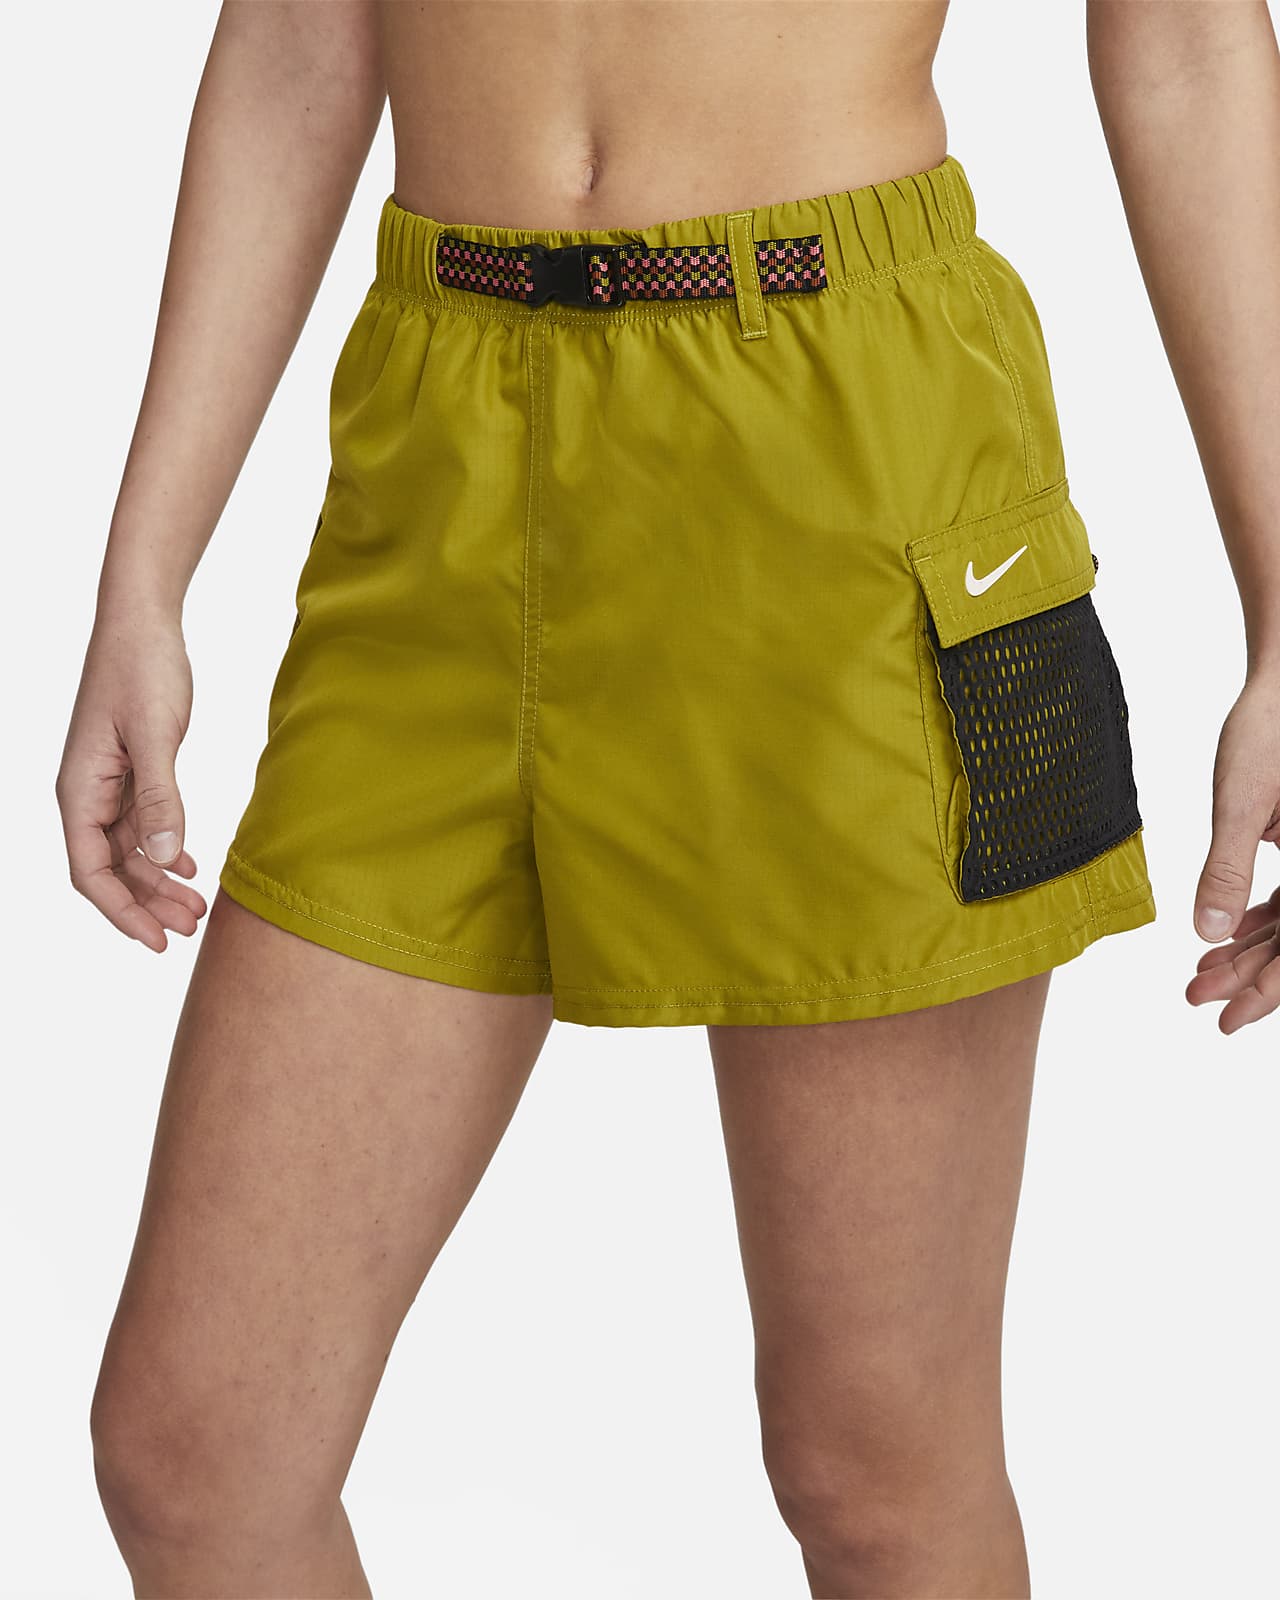 Voorbeeld Scheermes afbreken Nike Women's Cargo Cover-Up Swim Shorts. Nike.com